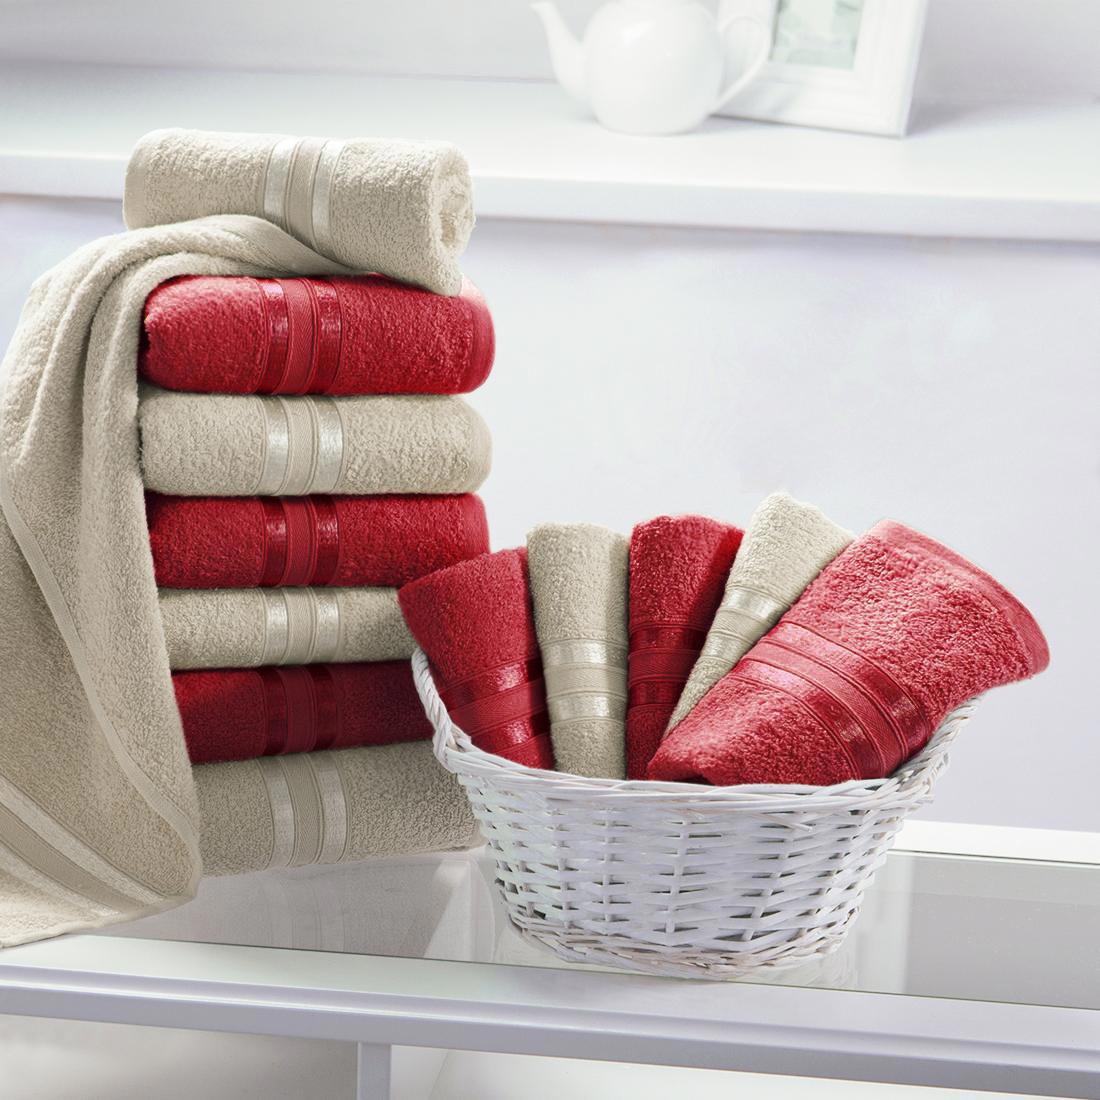 Метод полотенца